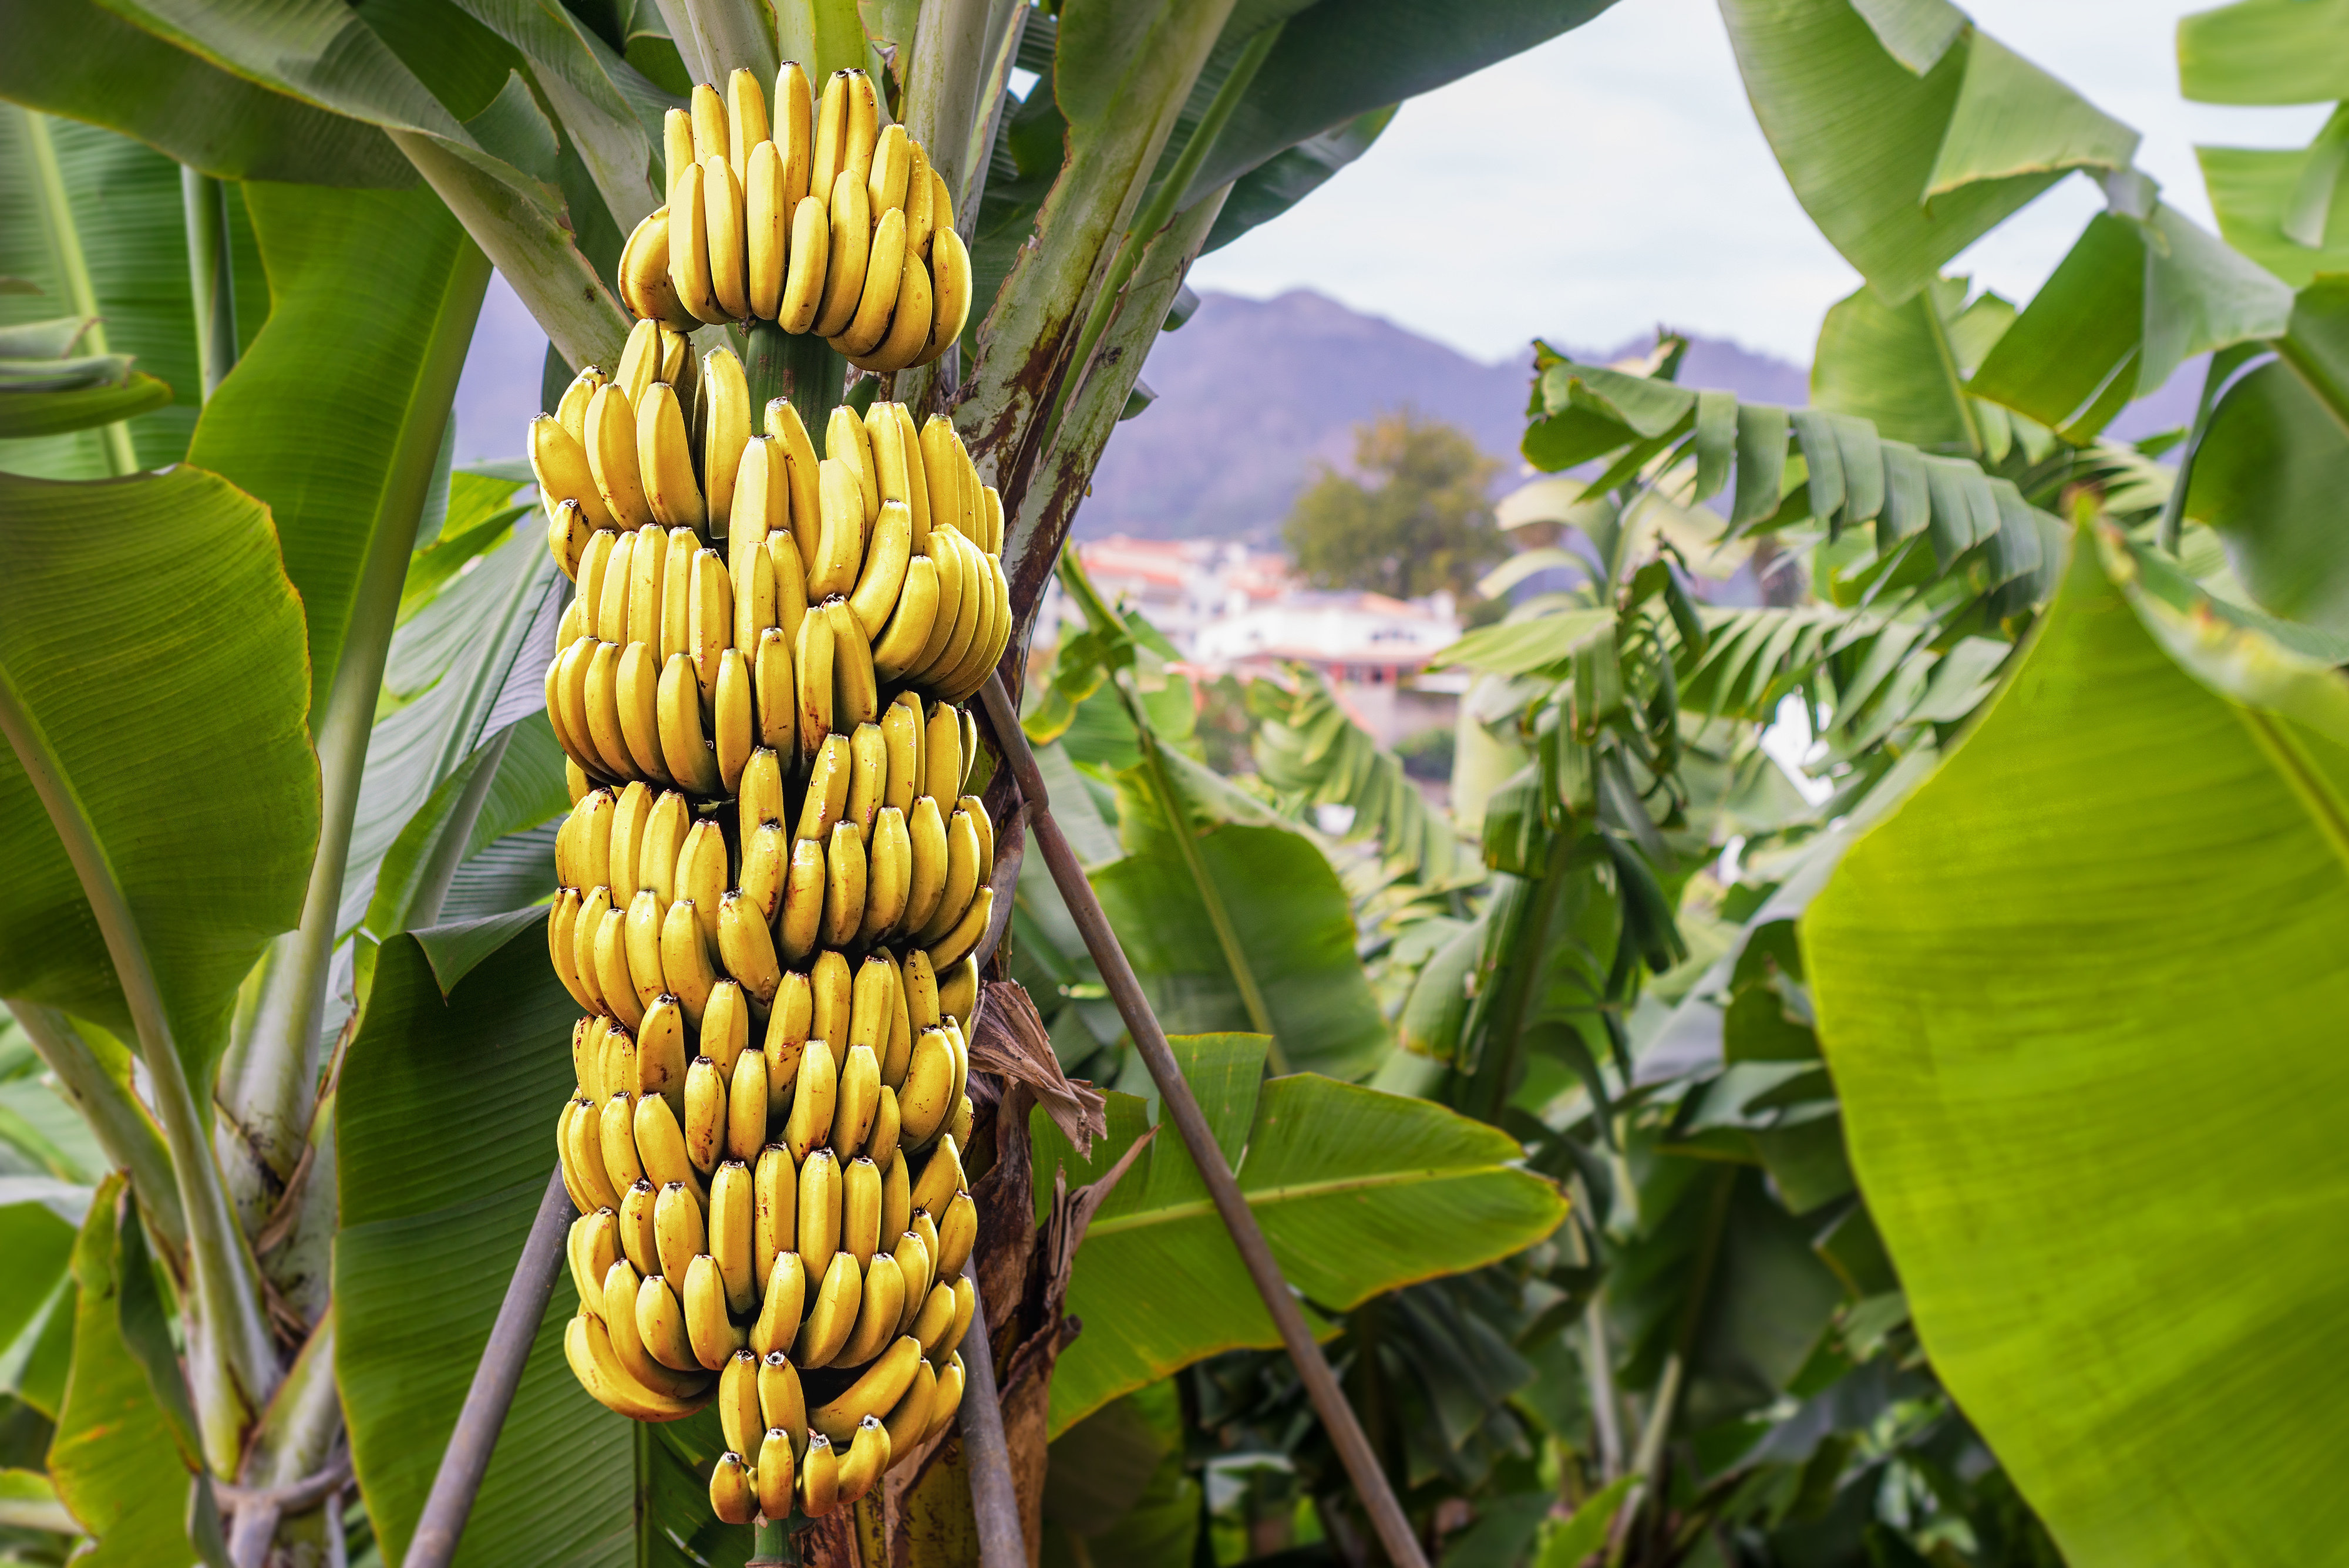 Бананы попадают на прилавки магазинов в зеленом виде, где со временем плоды начинают дозревать Поэтому при выборе бананов важно определить их свежесть